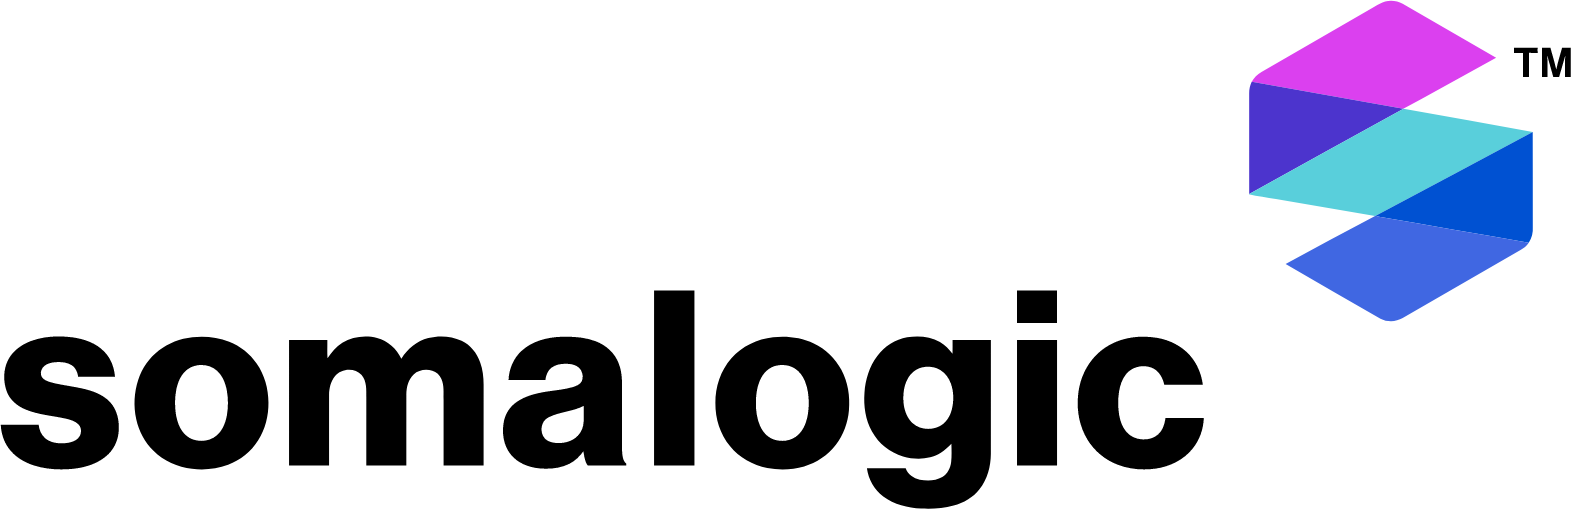 SomaLogic logo large (transparent PNG)